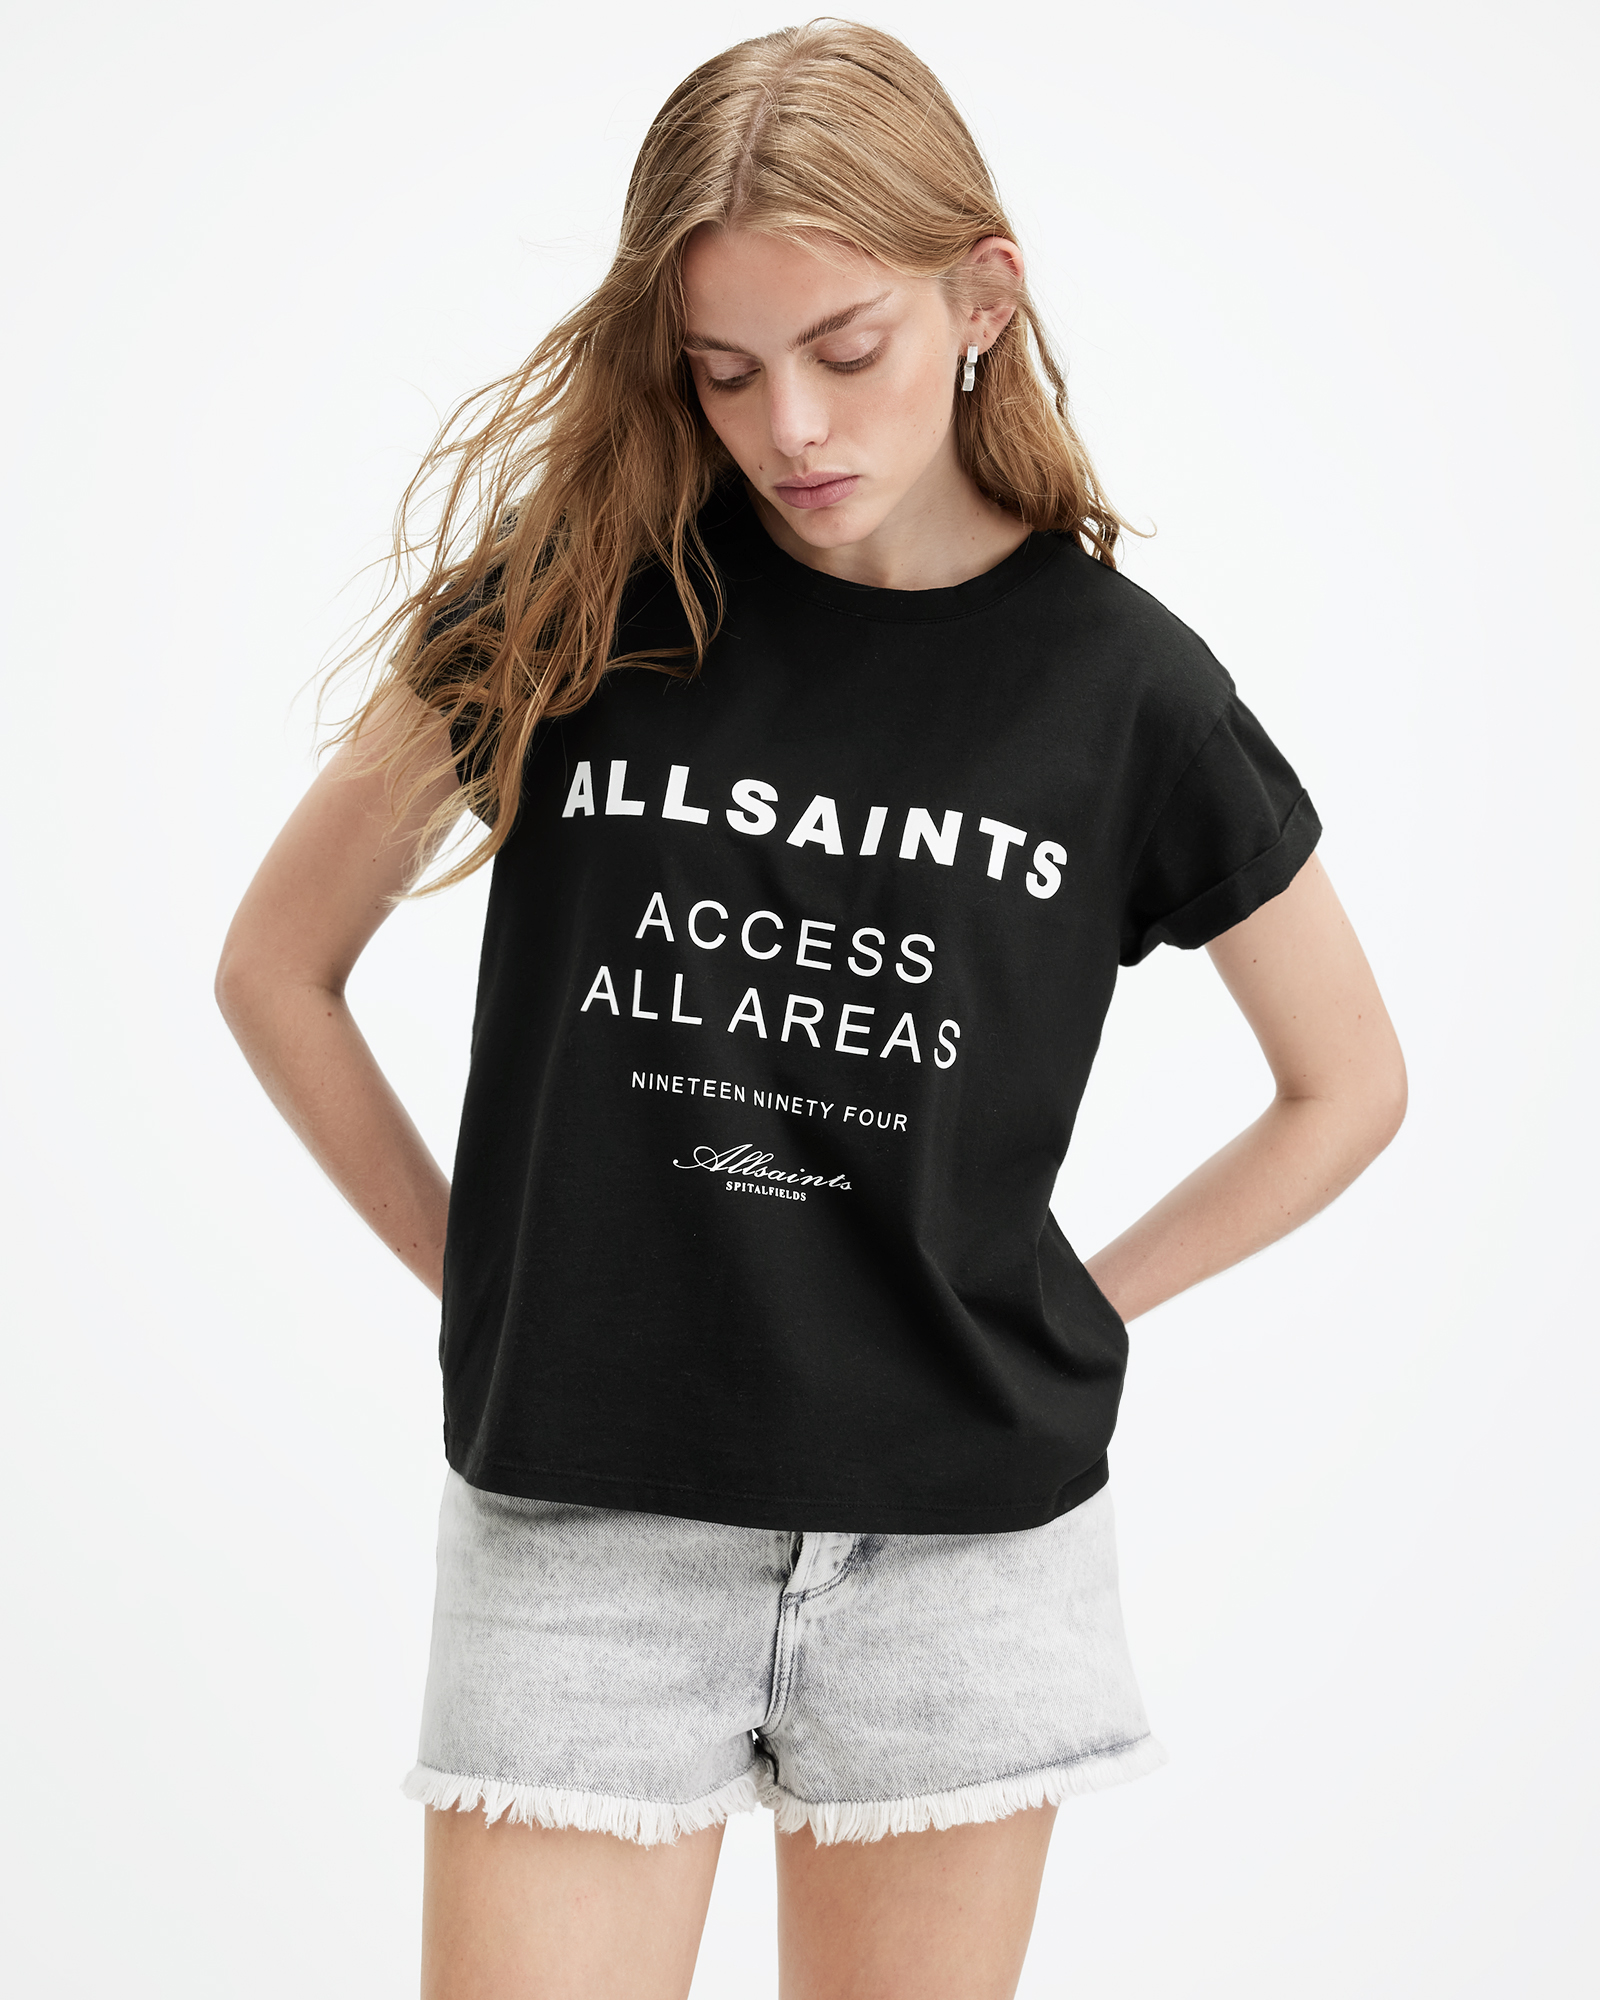 AllSaints Tour Anna Crew Neck Graphic T-Shirt,, Black